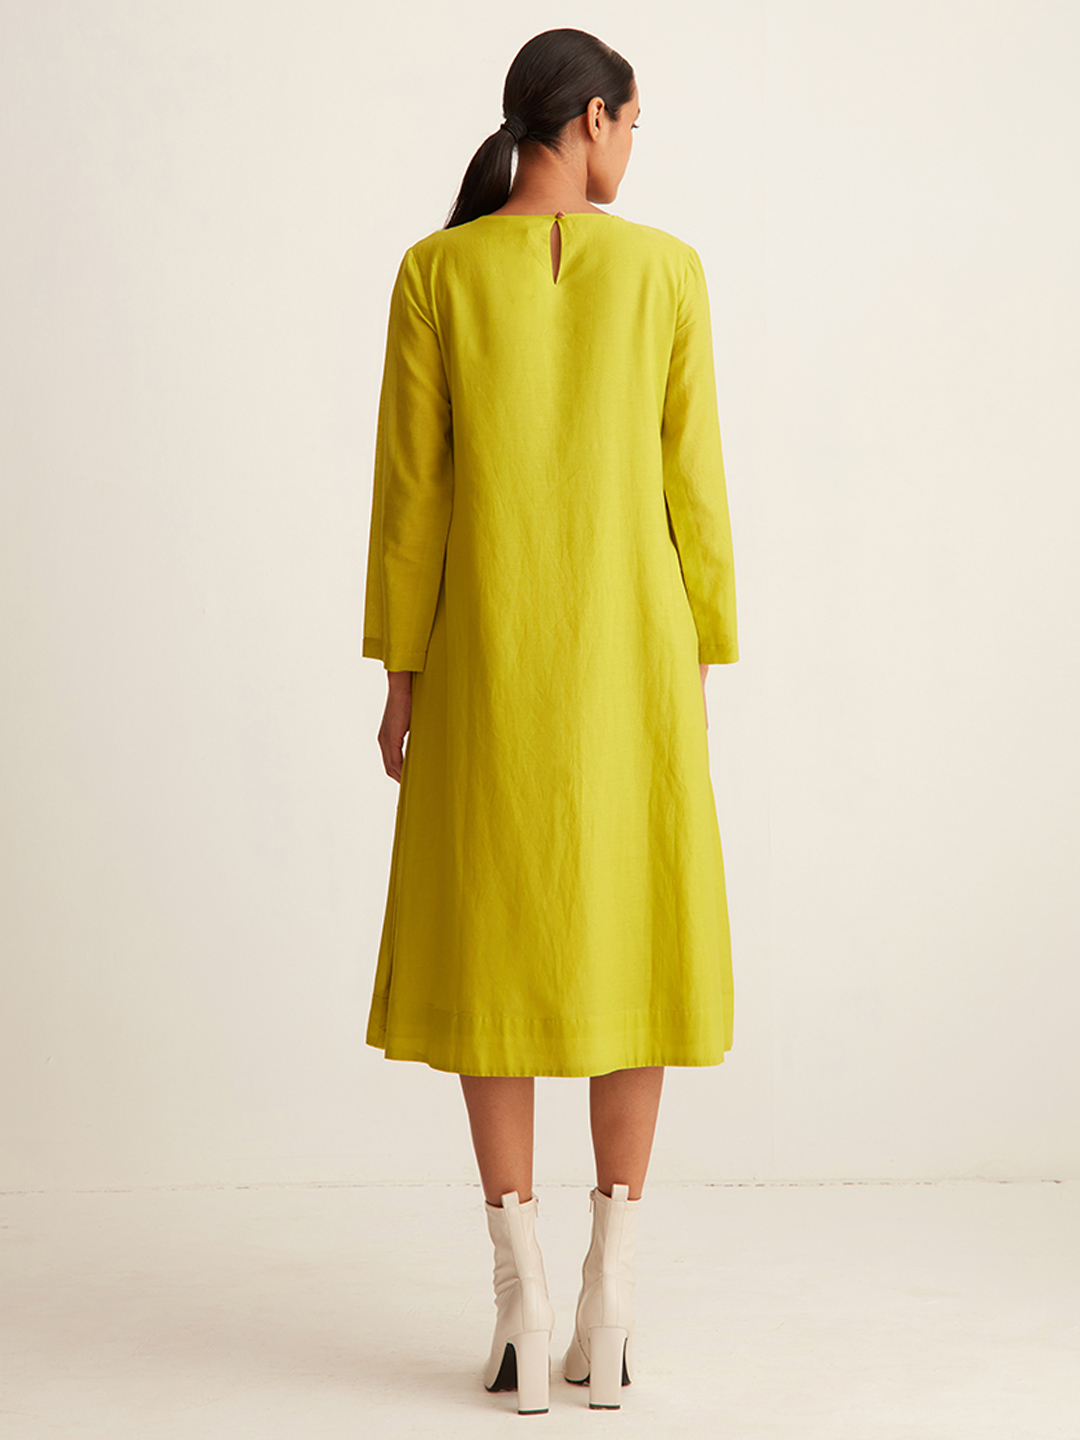 Buy Lime Tulip Dress | Latest Dresses for Women Online : Ancestry